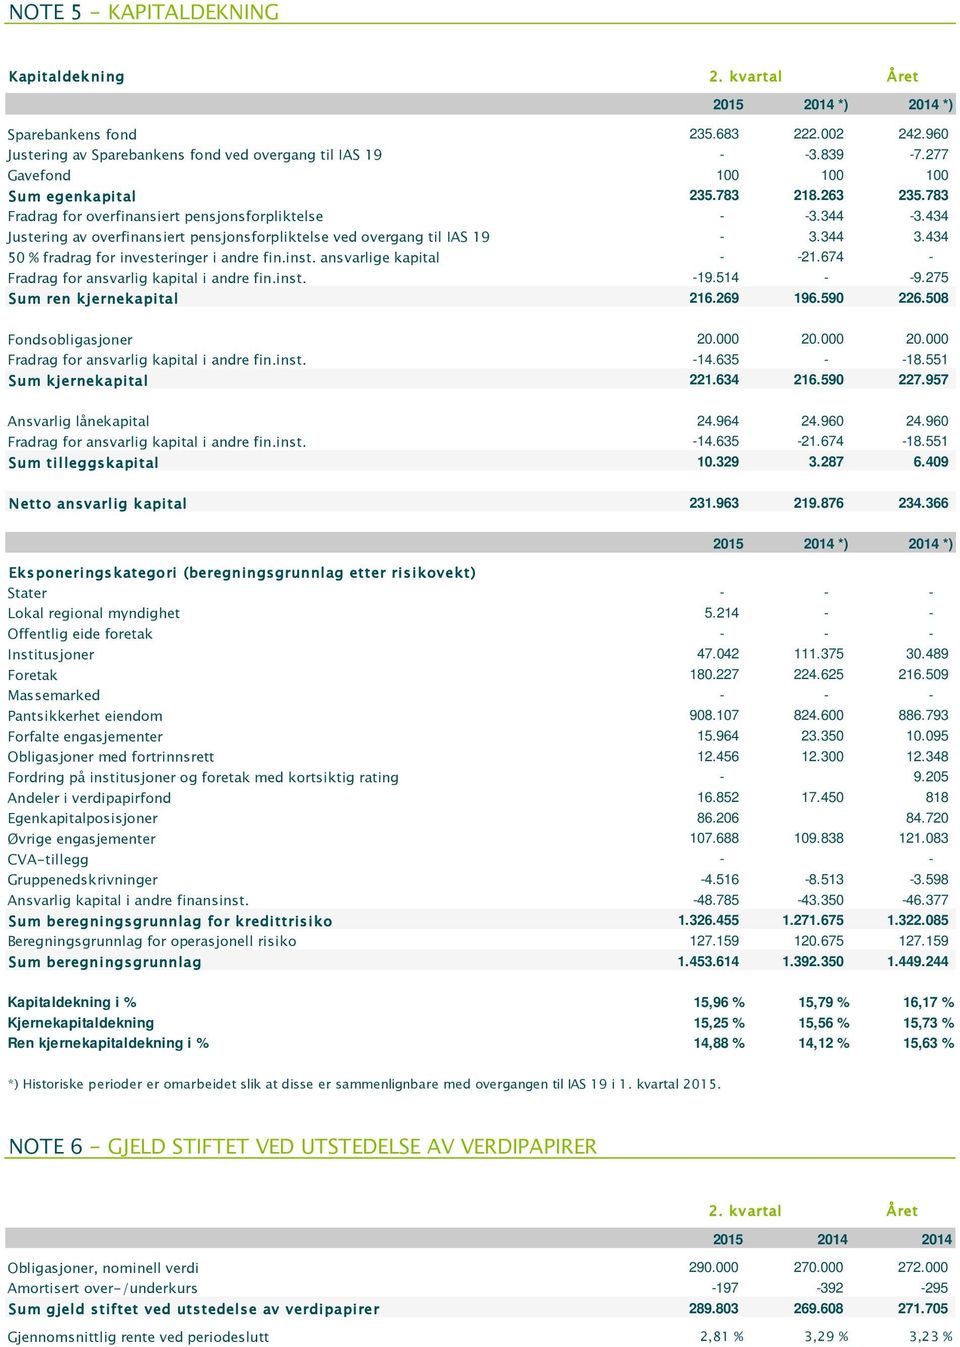 434 Justering av overfinansiert pensjonsforpliktelse ved overgang til IAS 19-3.344 3.434 50 % fradrag for investeringer i andre fin.inst. ansvarlige kapital - -21.